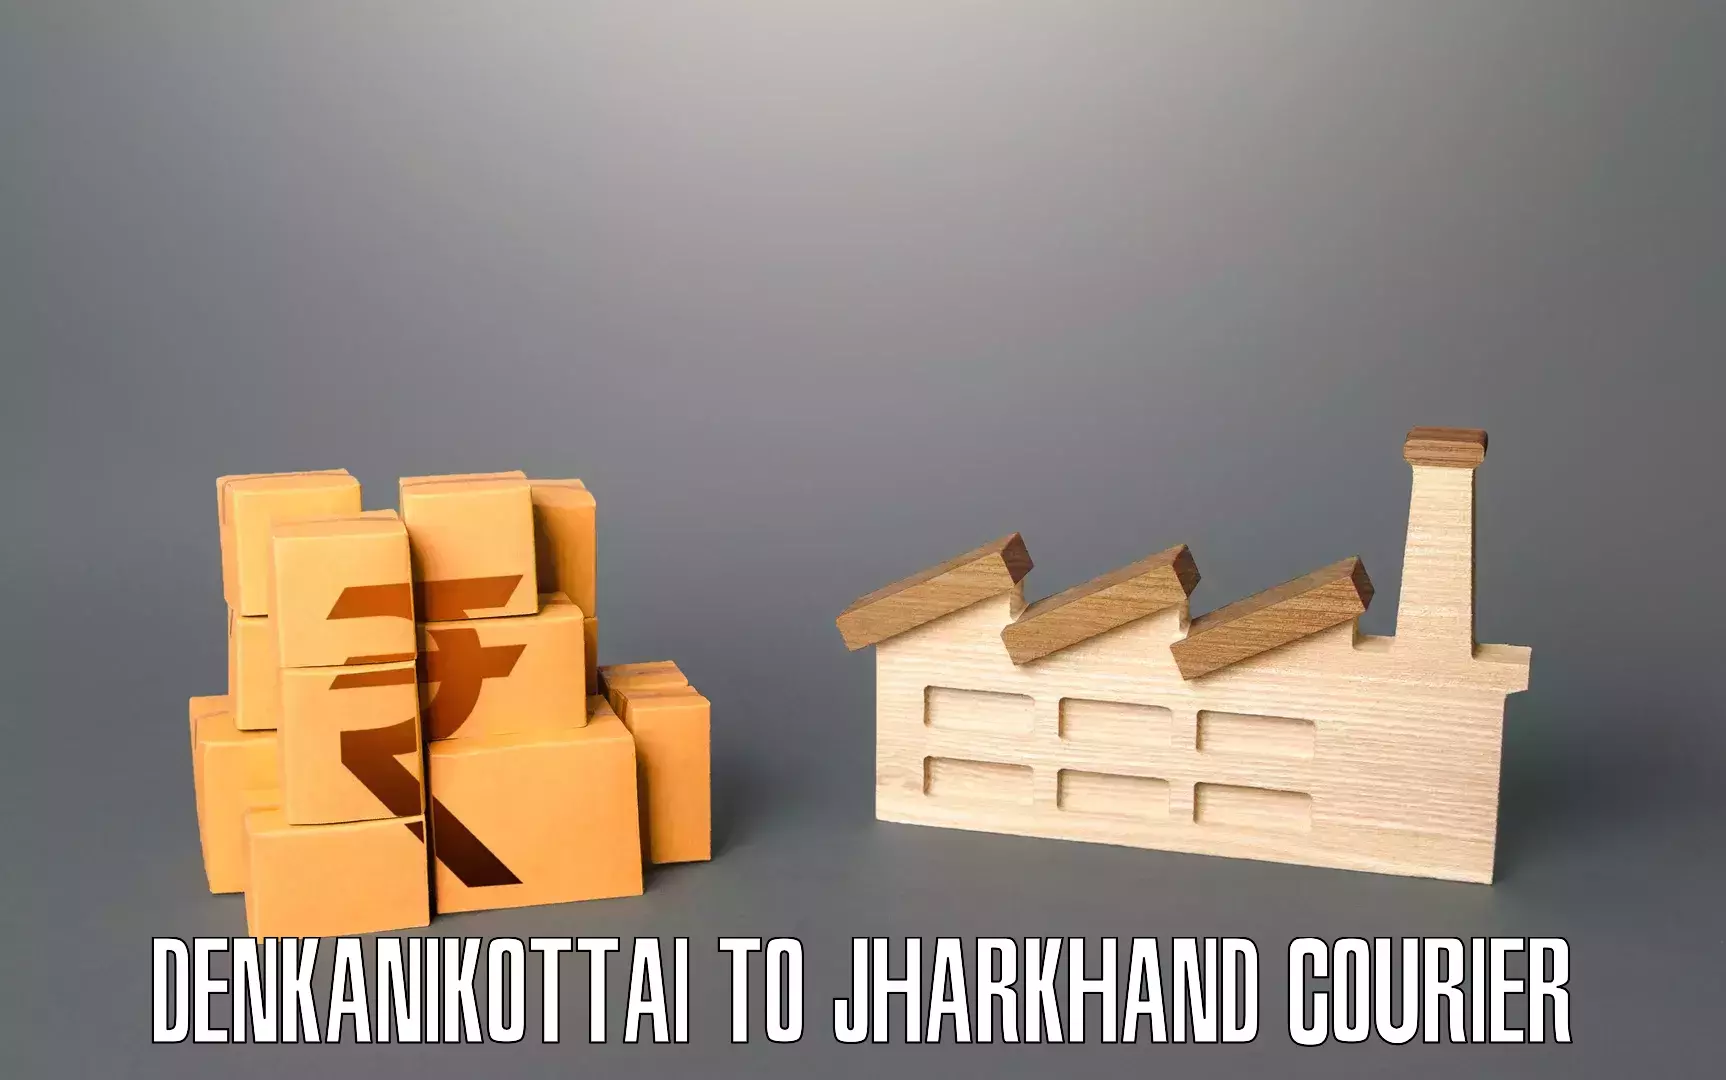 Affordable moving services Denkanikottai to Chakradharpur